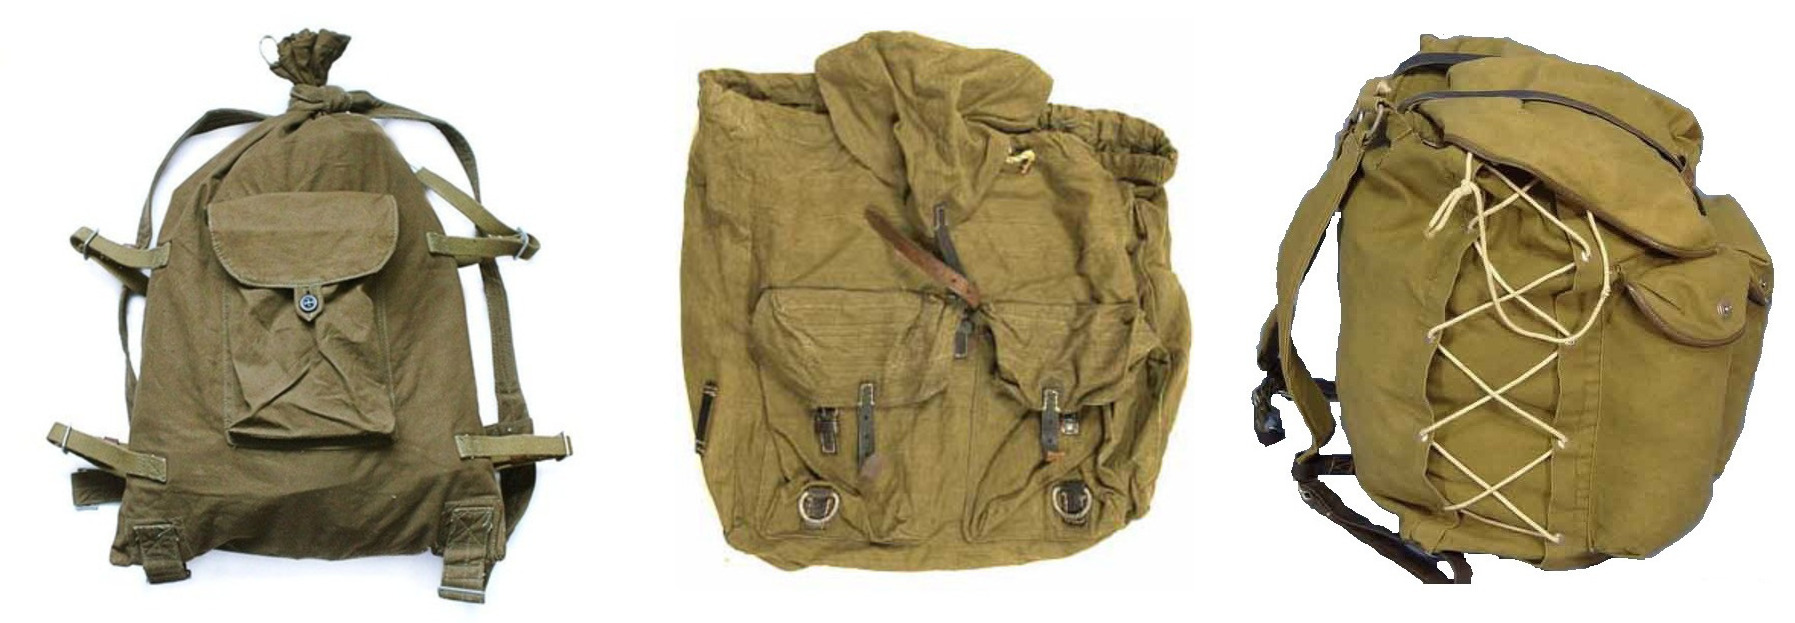 Радянські рюкзаки «Сидор», «Колобок», «Рюкзак Ярова». Також без поясної лямки, жорсткої спинки та блискавок. Широко використовувалися в армії, туризмі й повсякденному житті.